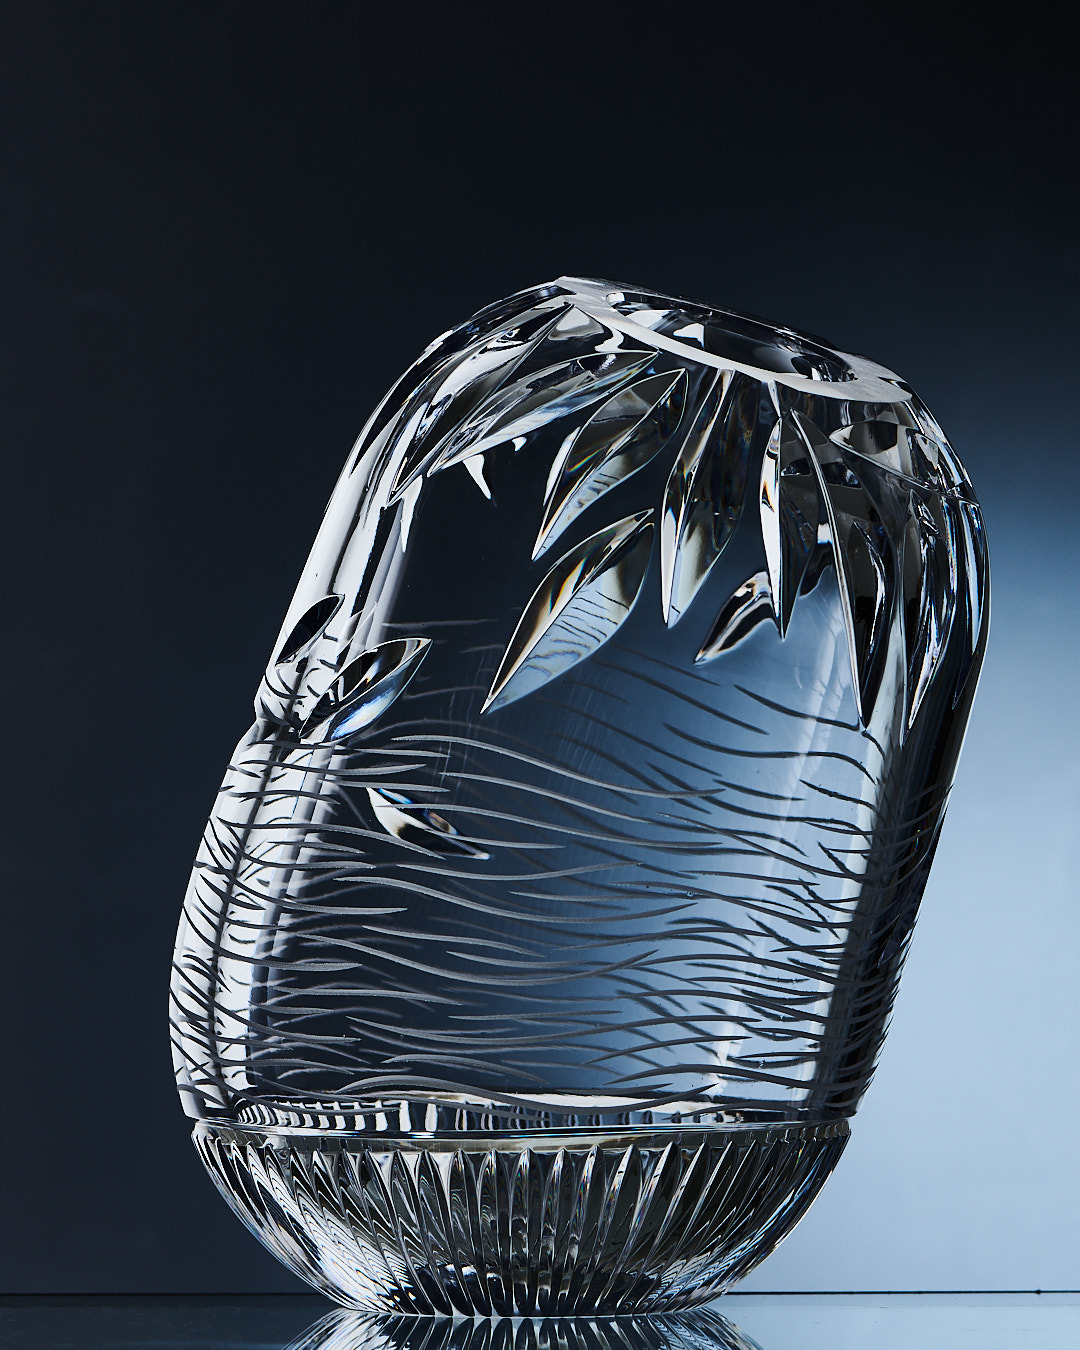 Гусевской завод имени Мальцова выпустил серию ваз «Времена года», необычный дизайн которых разработала художница и архитектор Ольга Трейвас.